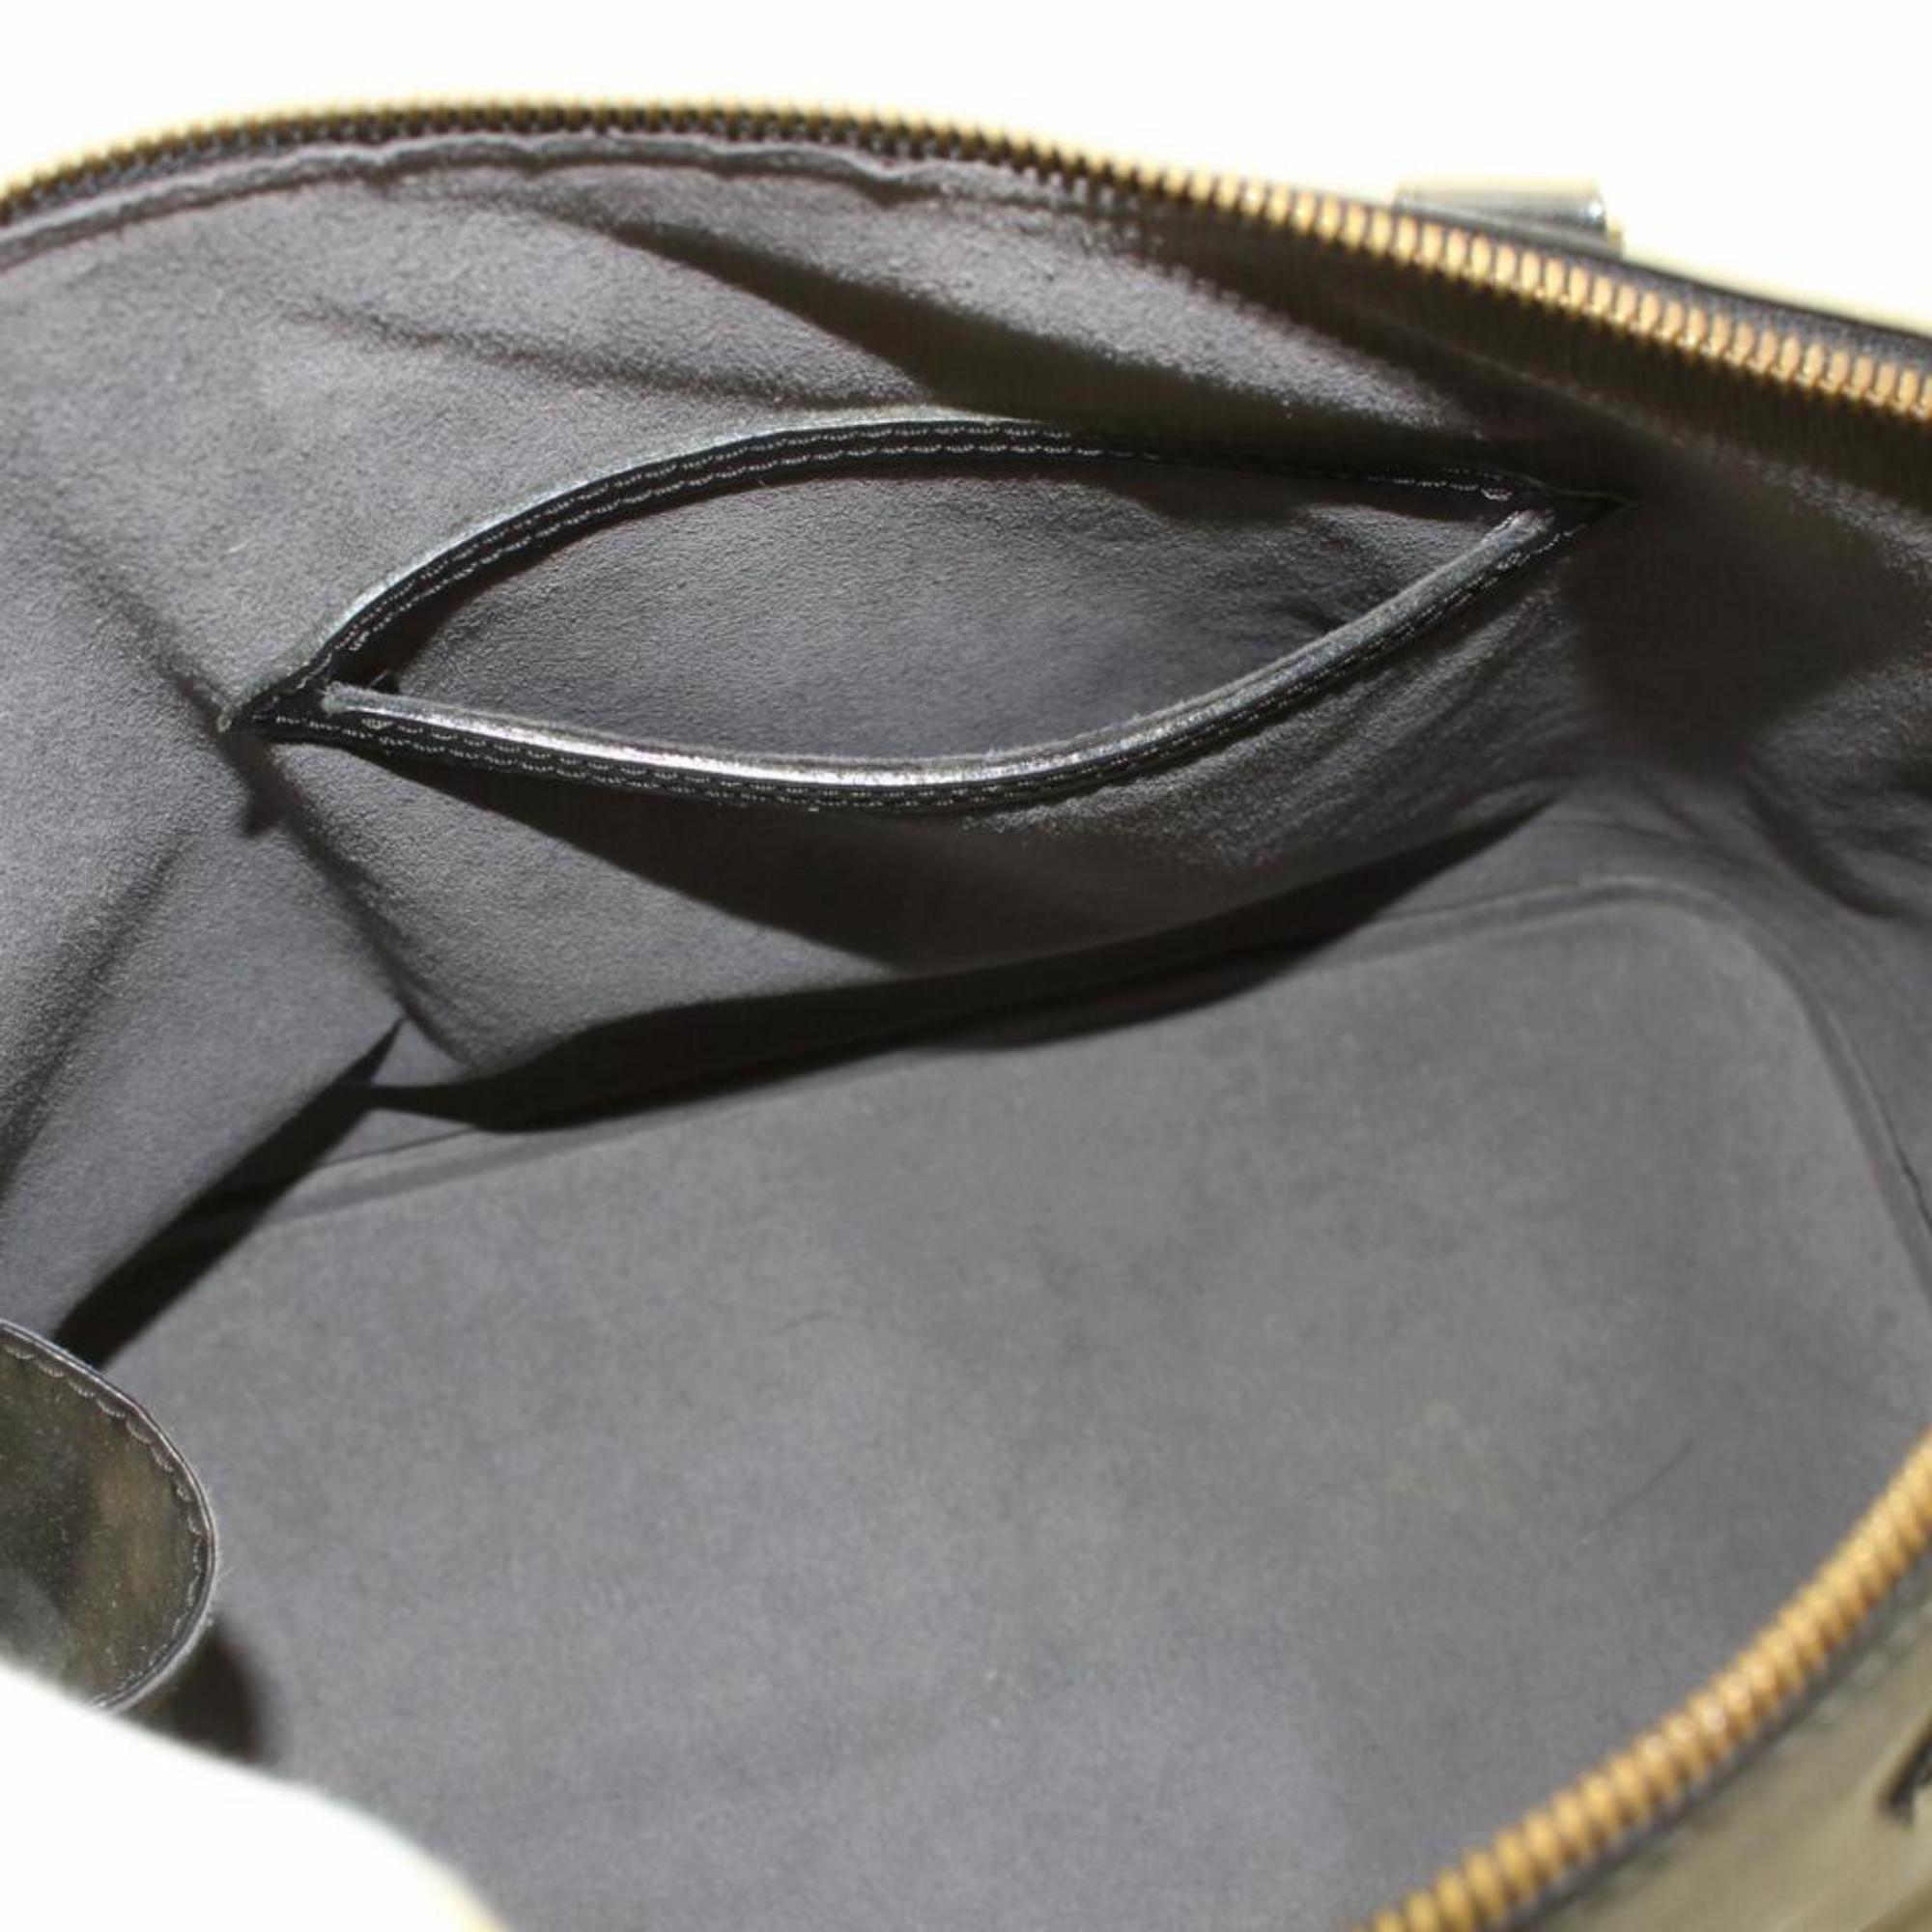 Women's Louis Vuitton Alma Noir with Strap 868643 Black Leather Satchel For Sale